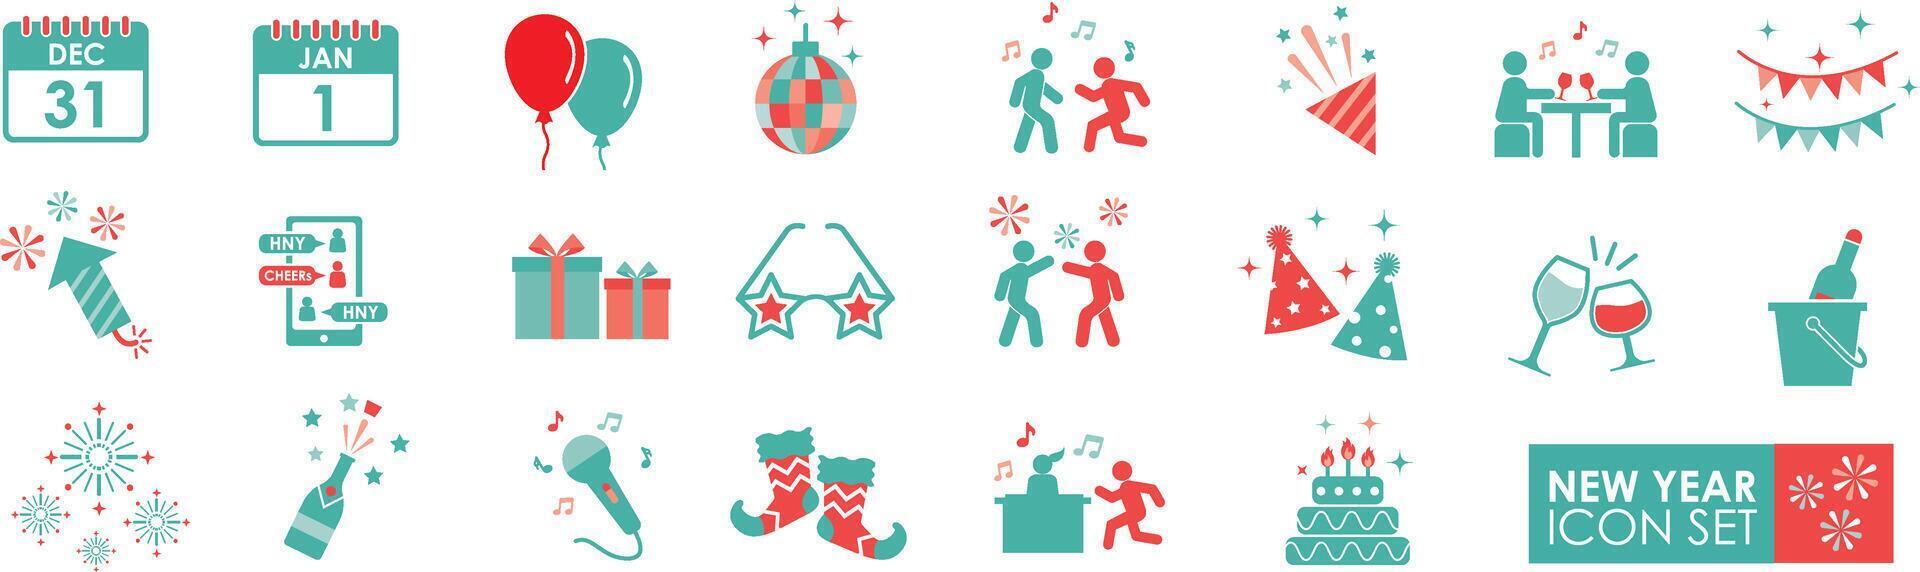 Novo ano sólido ícones vetor coleção. contendo celebrações, fogos de artifício, champanhe, bandeiras, saúde, festas, presentes, champanhe, surpresas, eventos, e balões.